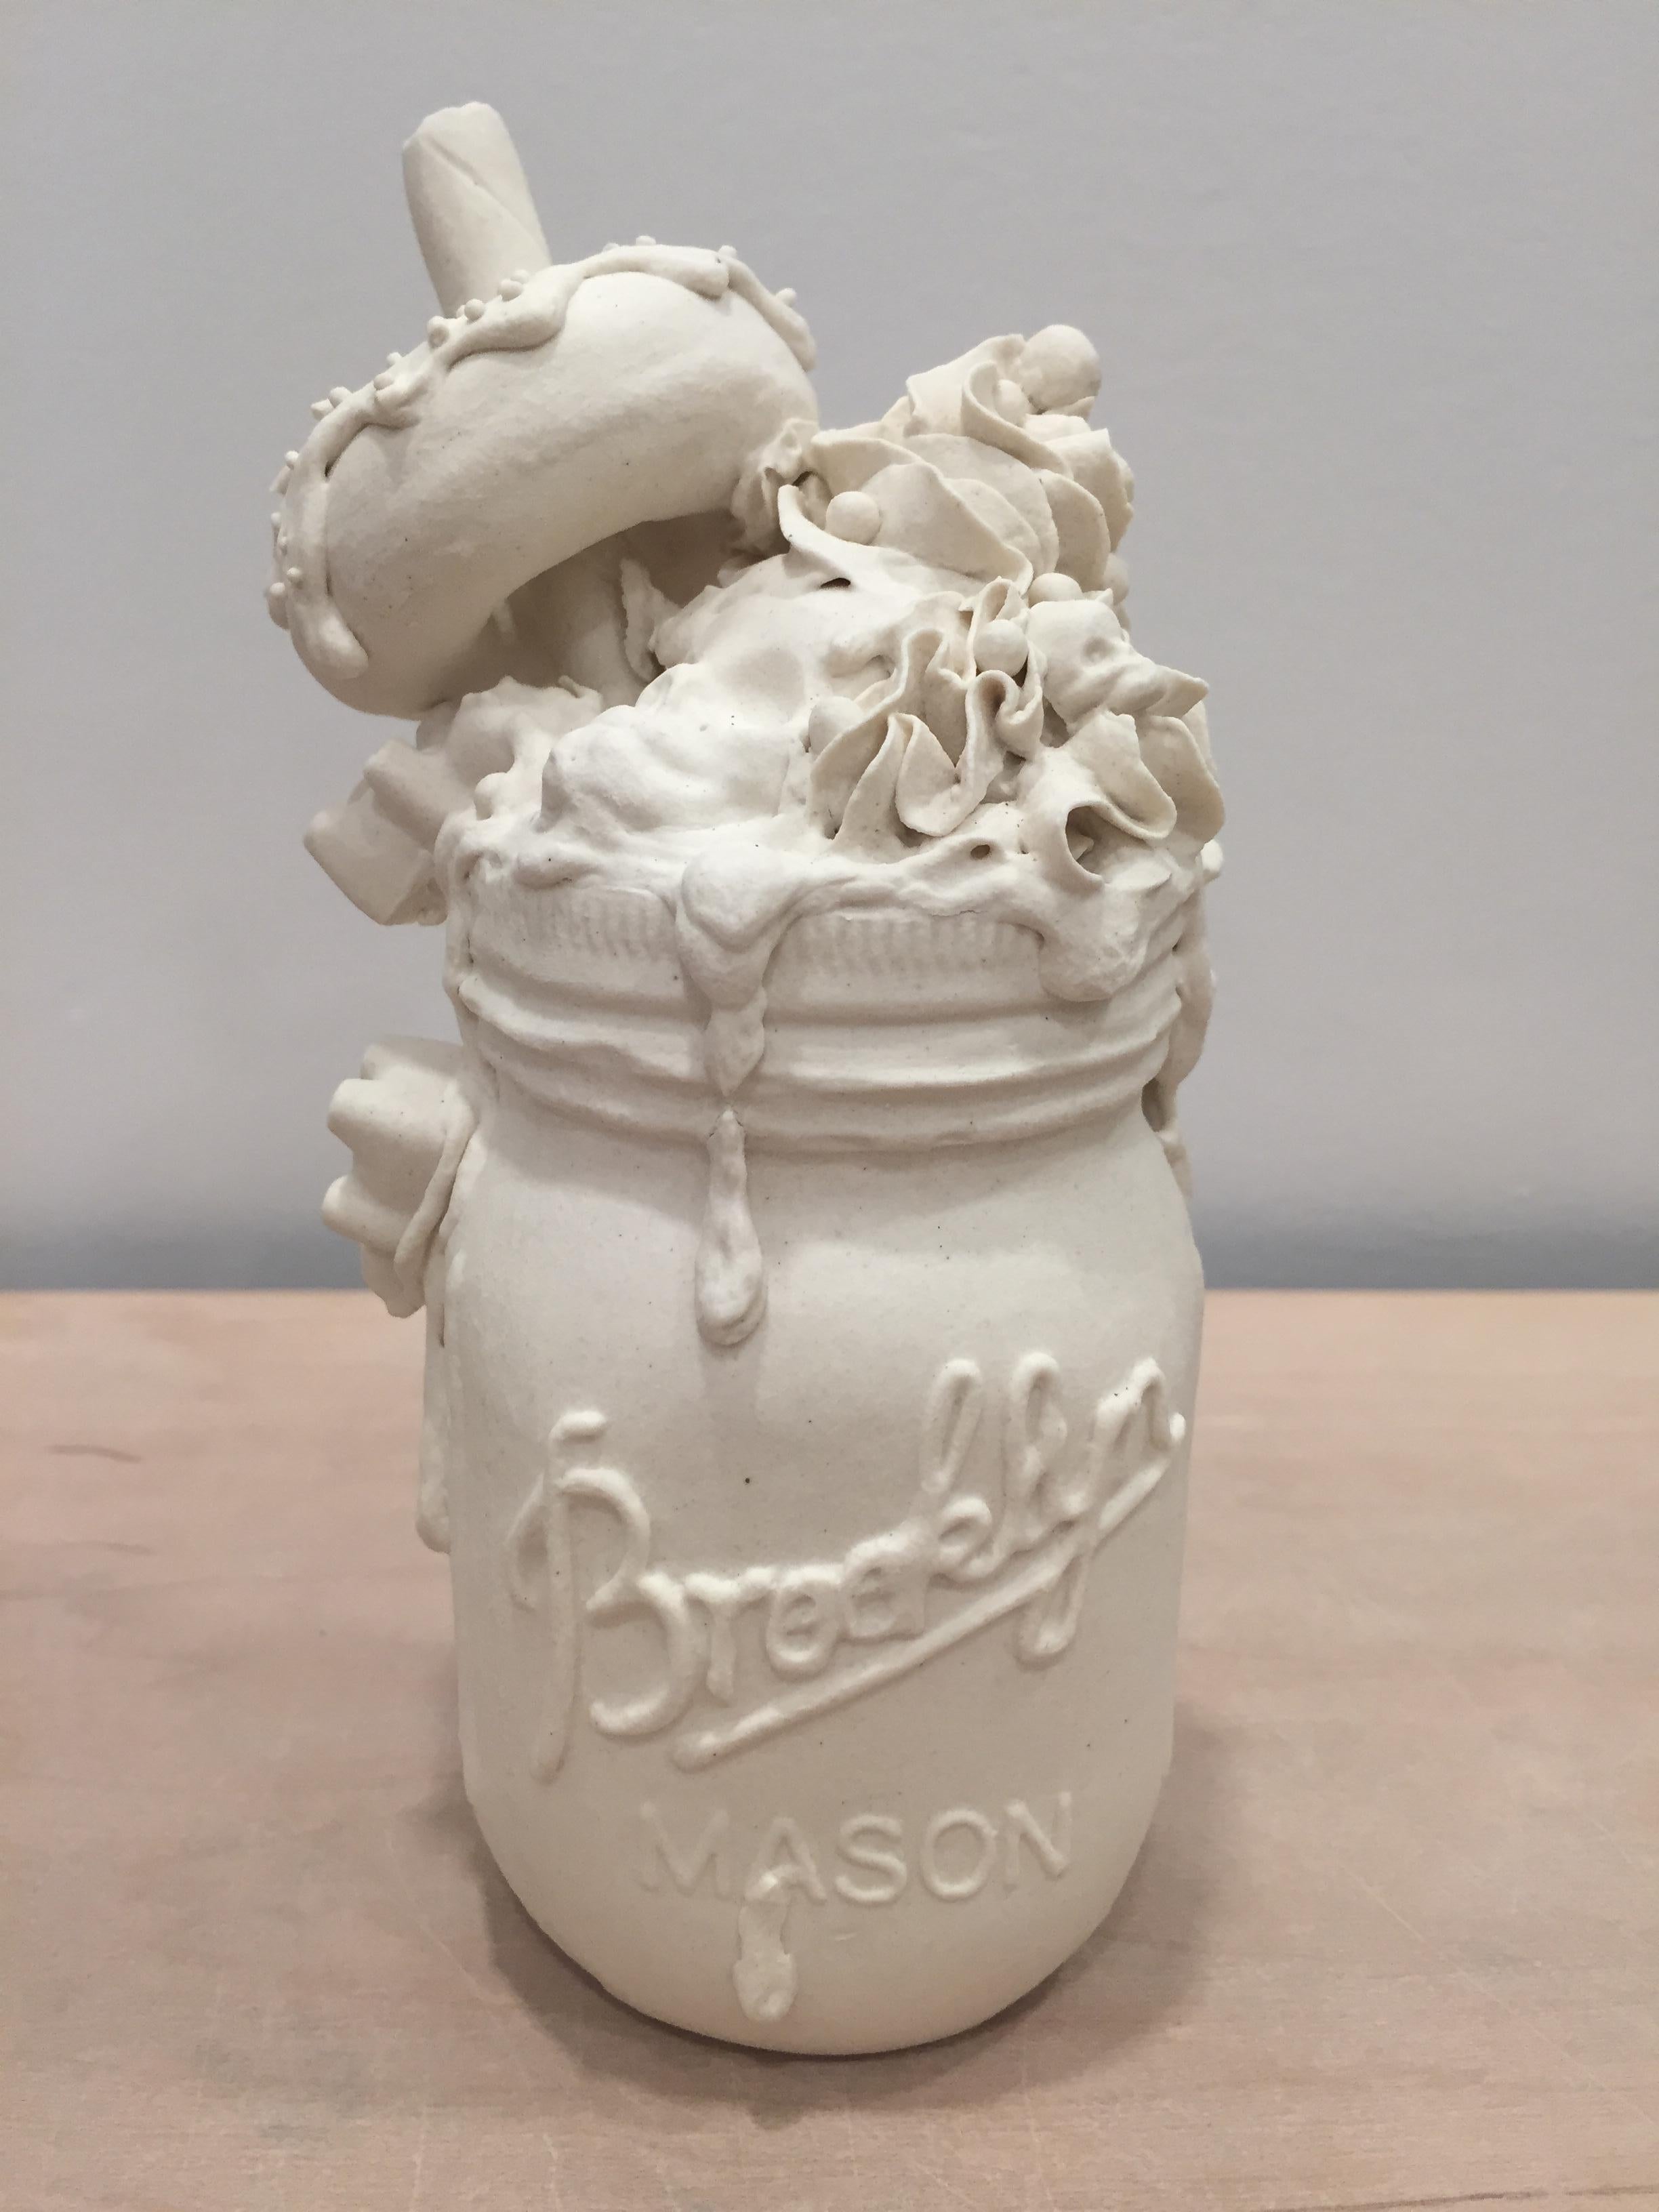 La jarre à crème glacée III - Marron Figurative Sculpture par Jacqueline Tse